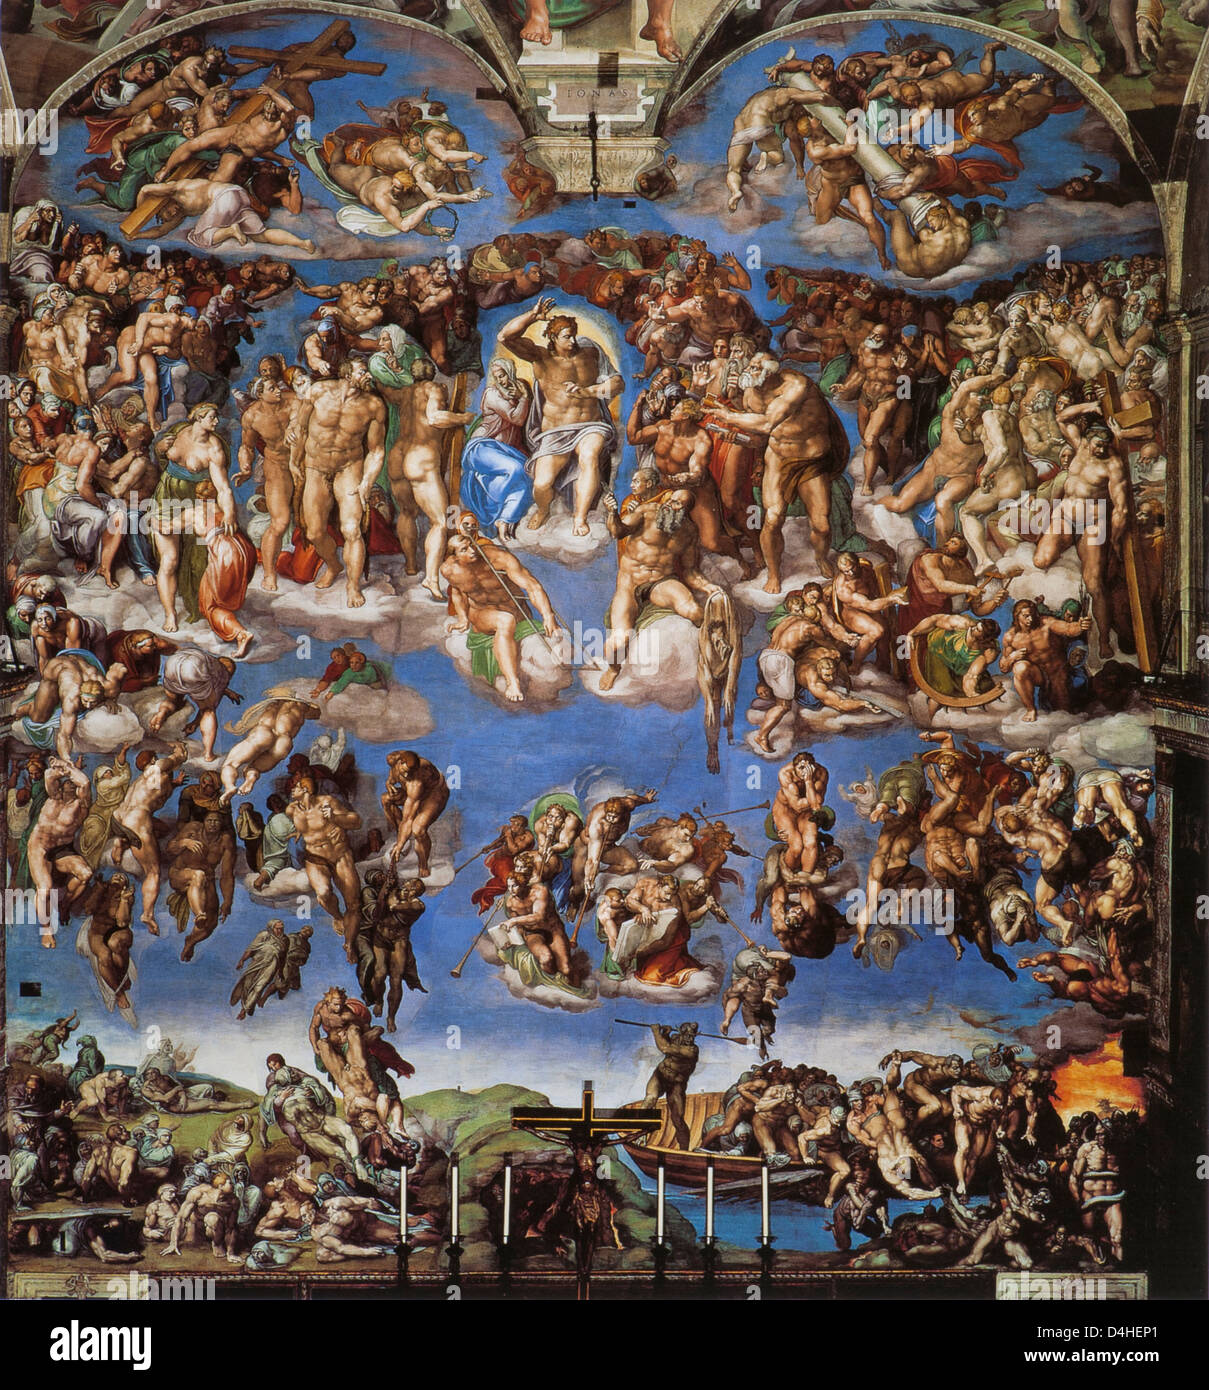 Das jüngste Gericht, 1537-41 von Michelangelo in der Sixtinischen Kapelle, St. Peter, Rom Stockfoto